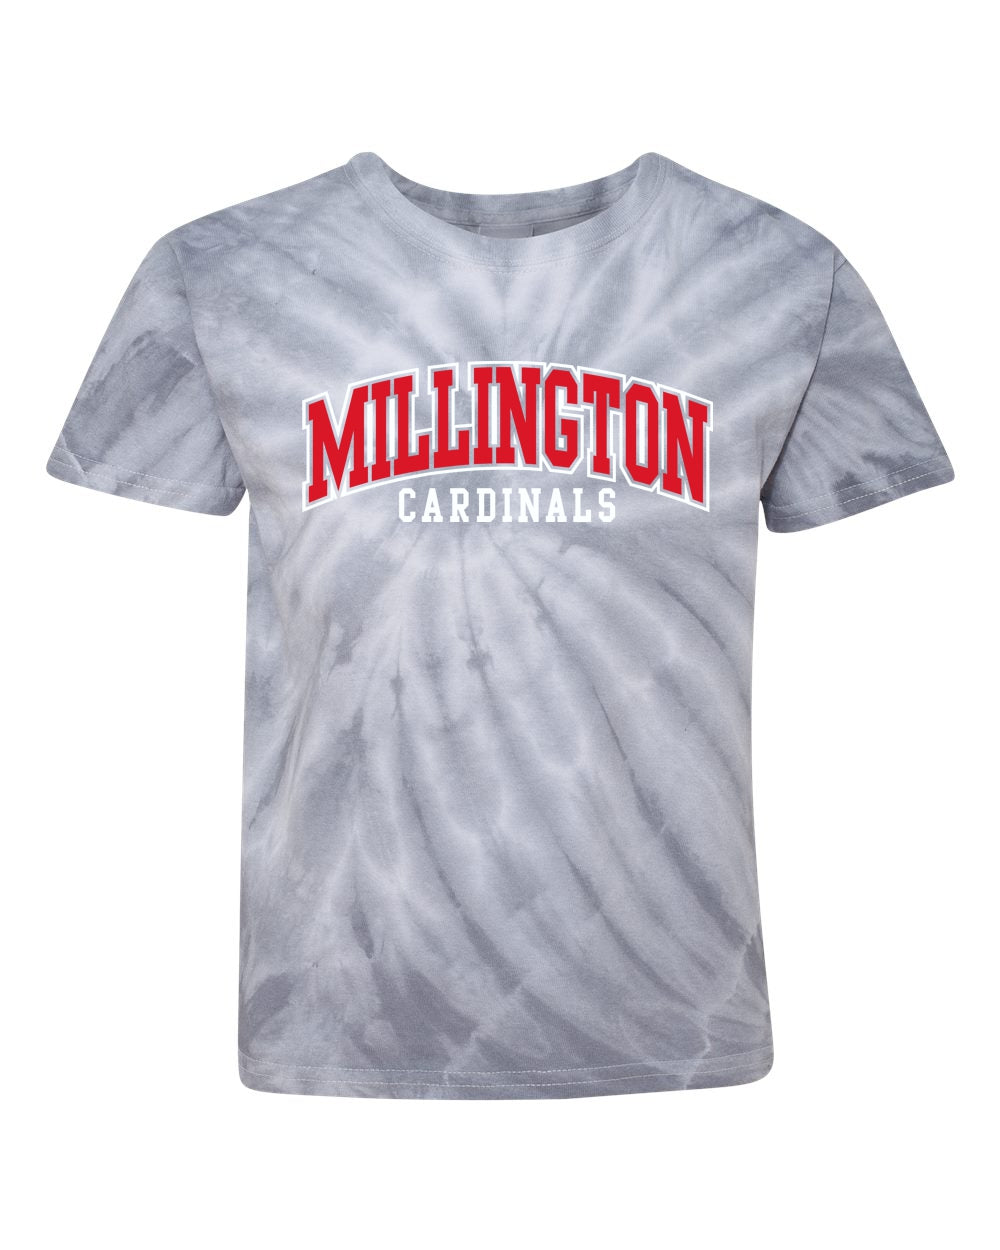 Millington Cardinals Tie Dye T-shirt